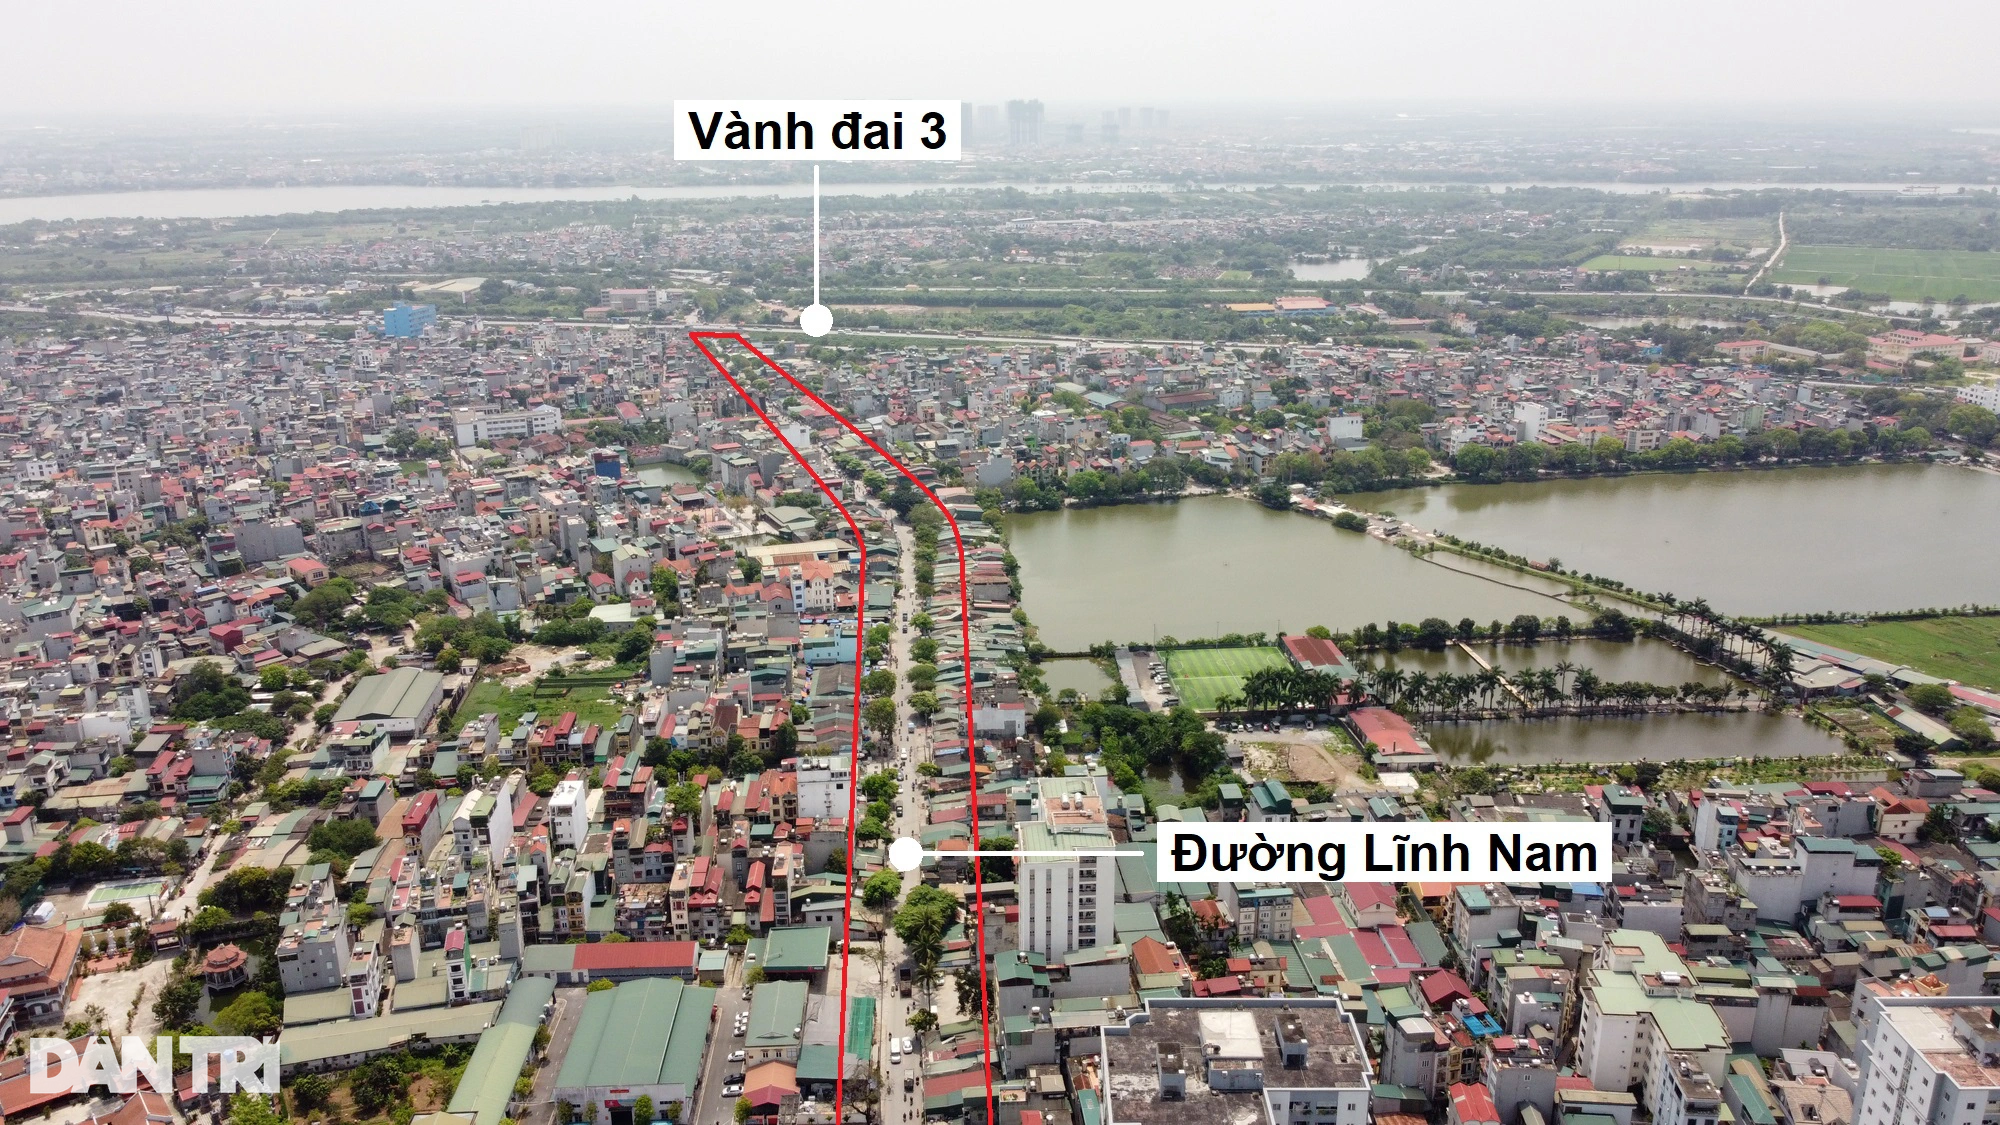 Toàn cảnh đường vành đai 2,5 đi qua nhiều khu đô thị ở Hà Nội - 19